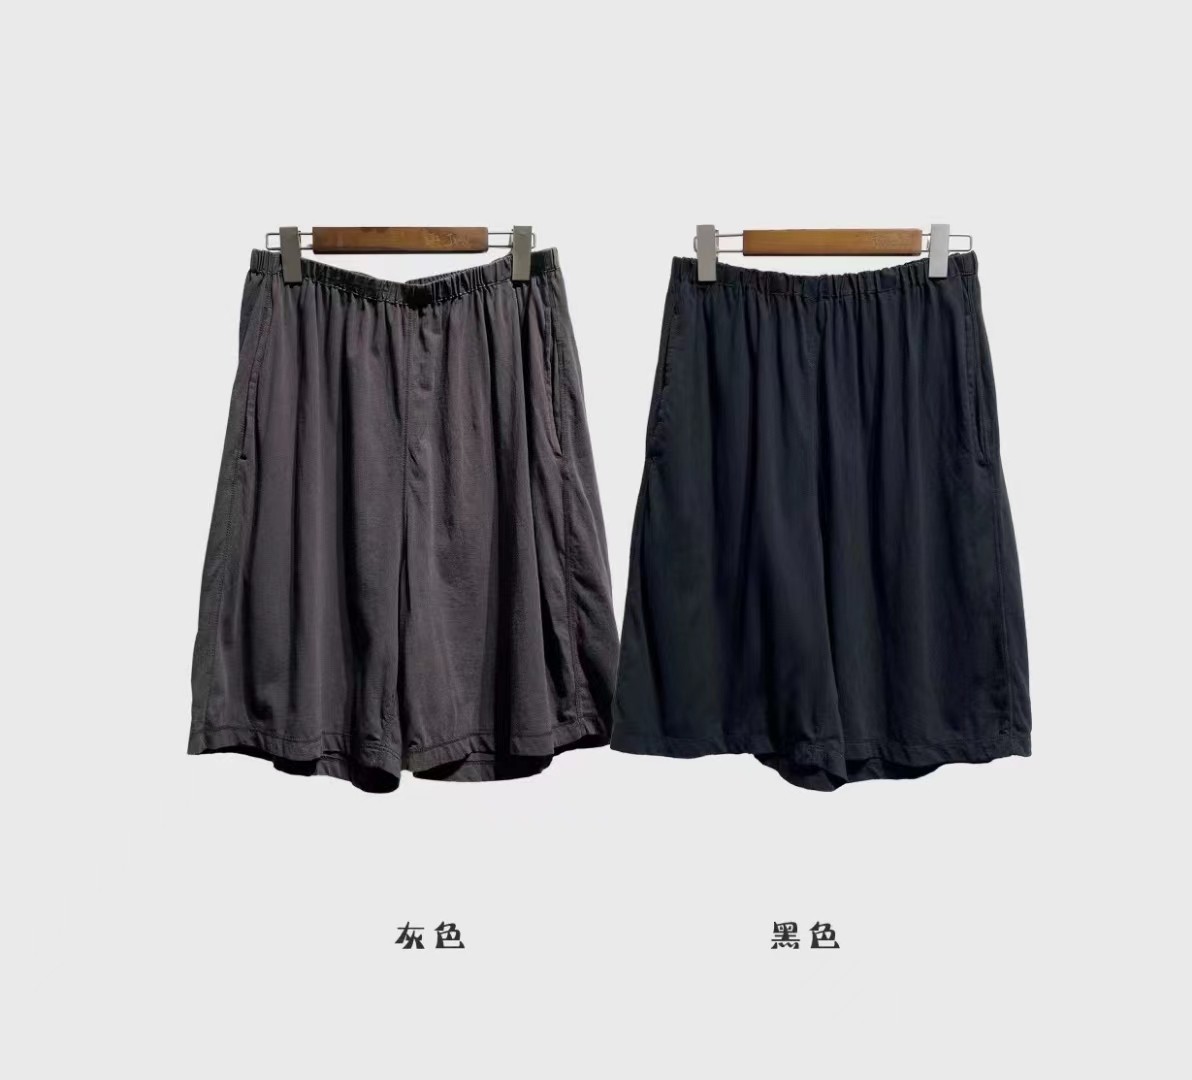 布衣分享 K22355几见原创设计100%棉中裤 - 图2